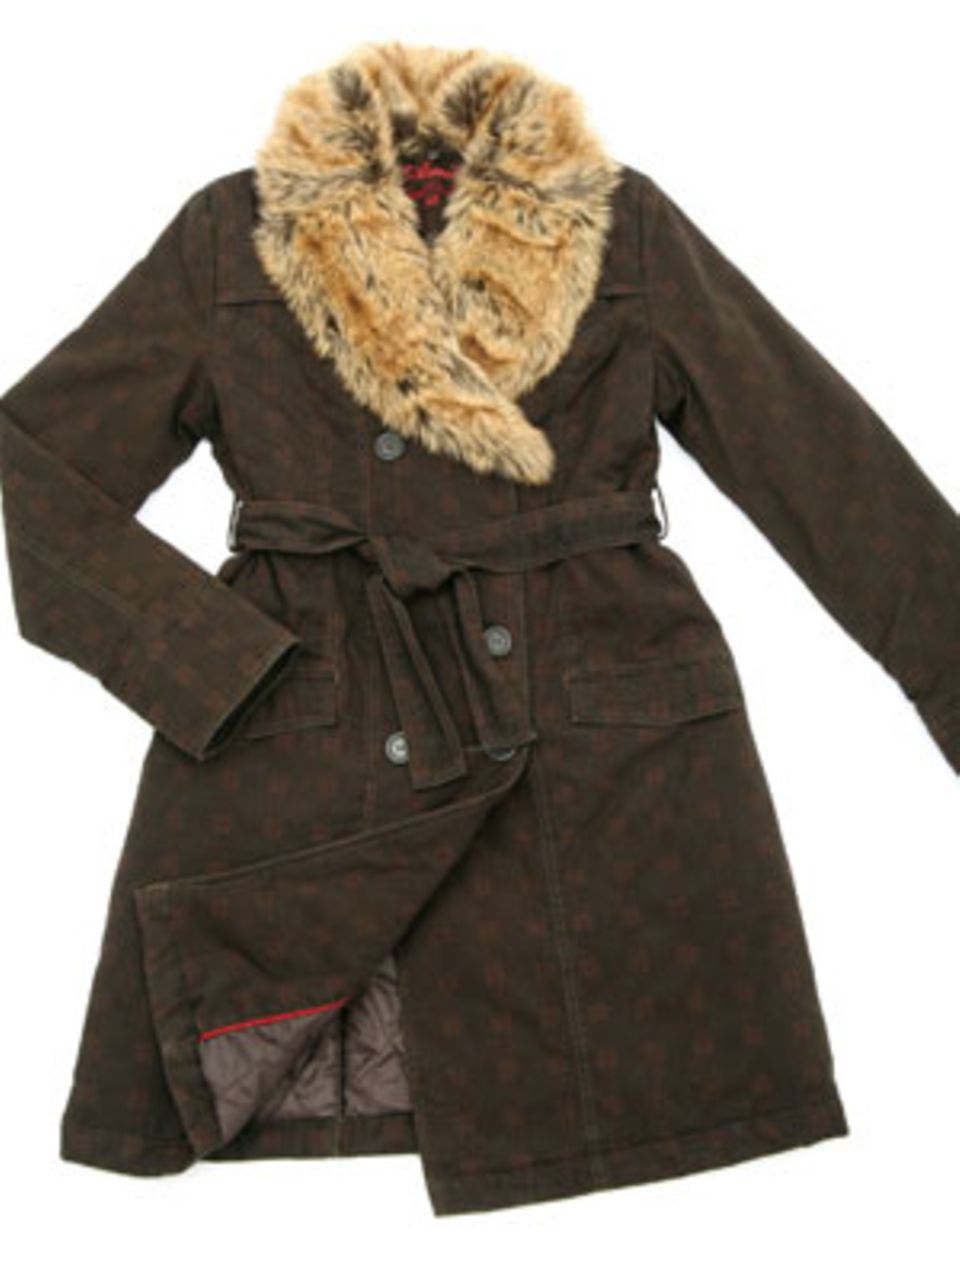 Mantel mit Fake-Fur-Besatz von Amisu, 59,95 Euro